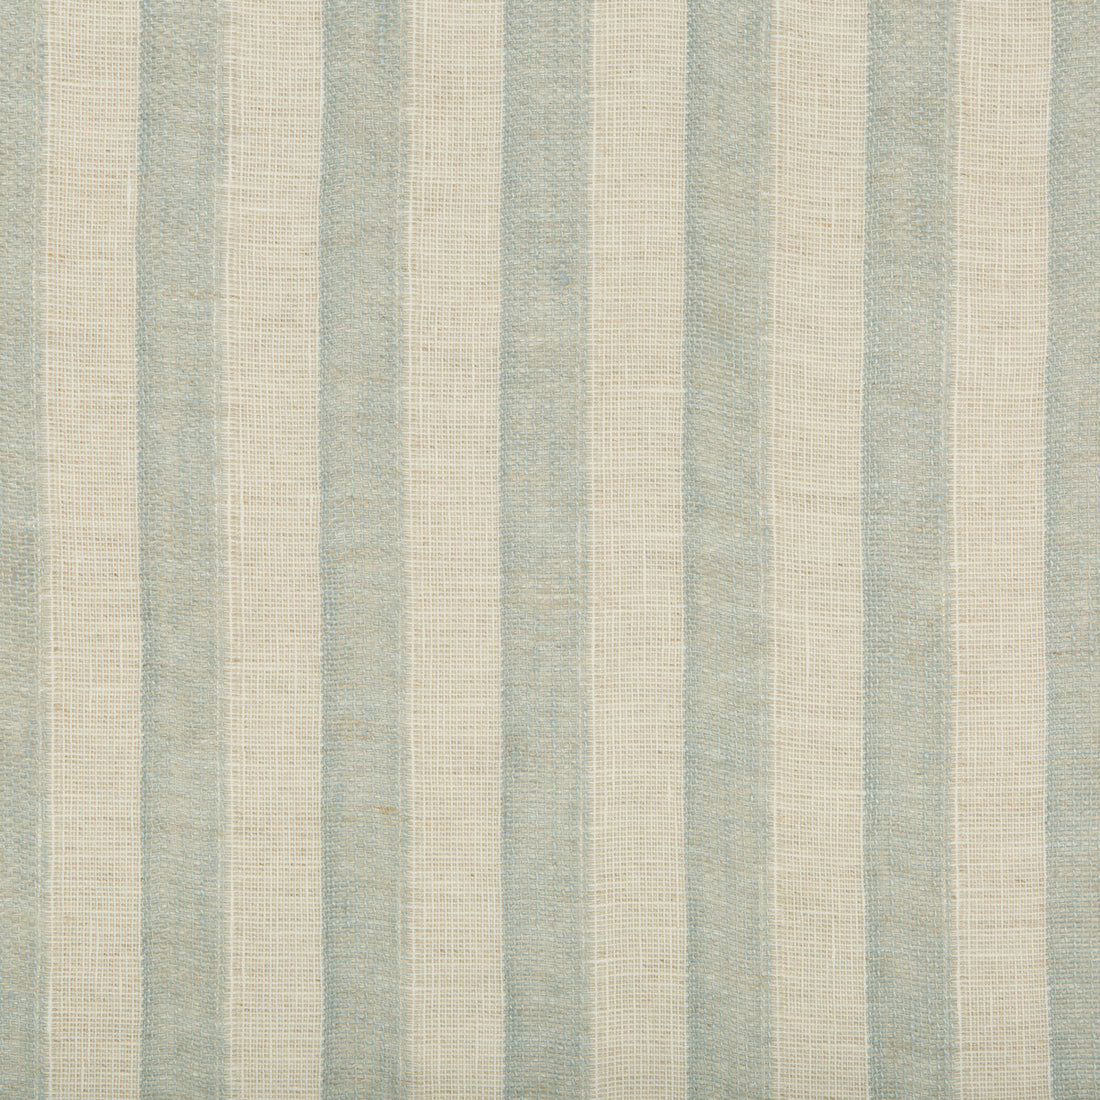 Kravet Design fabric in 4592-123 color - pattern 4592.123.0 - by Kravet Design